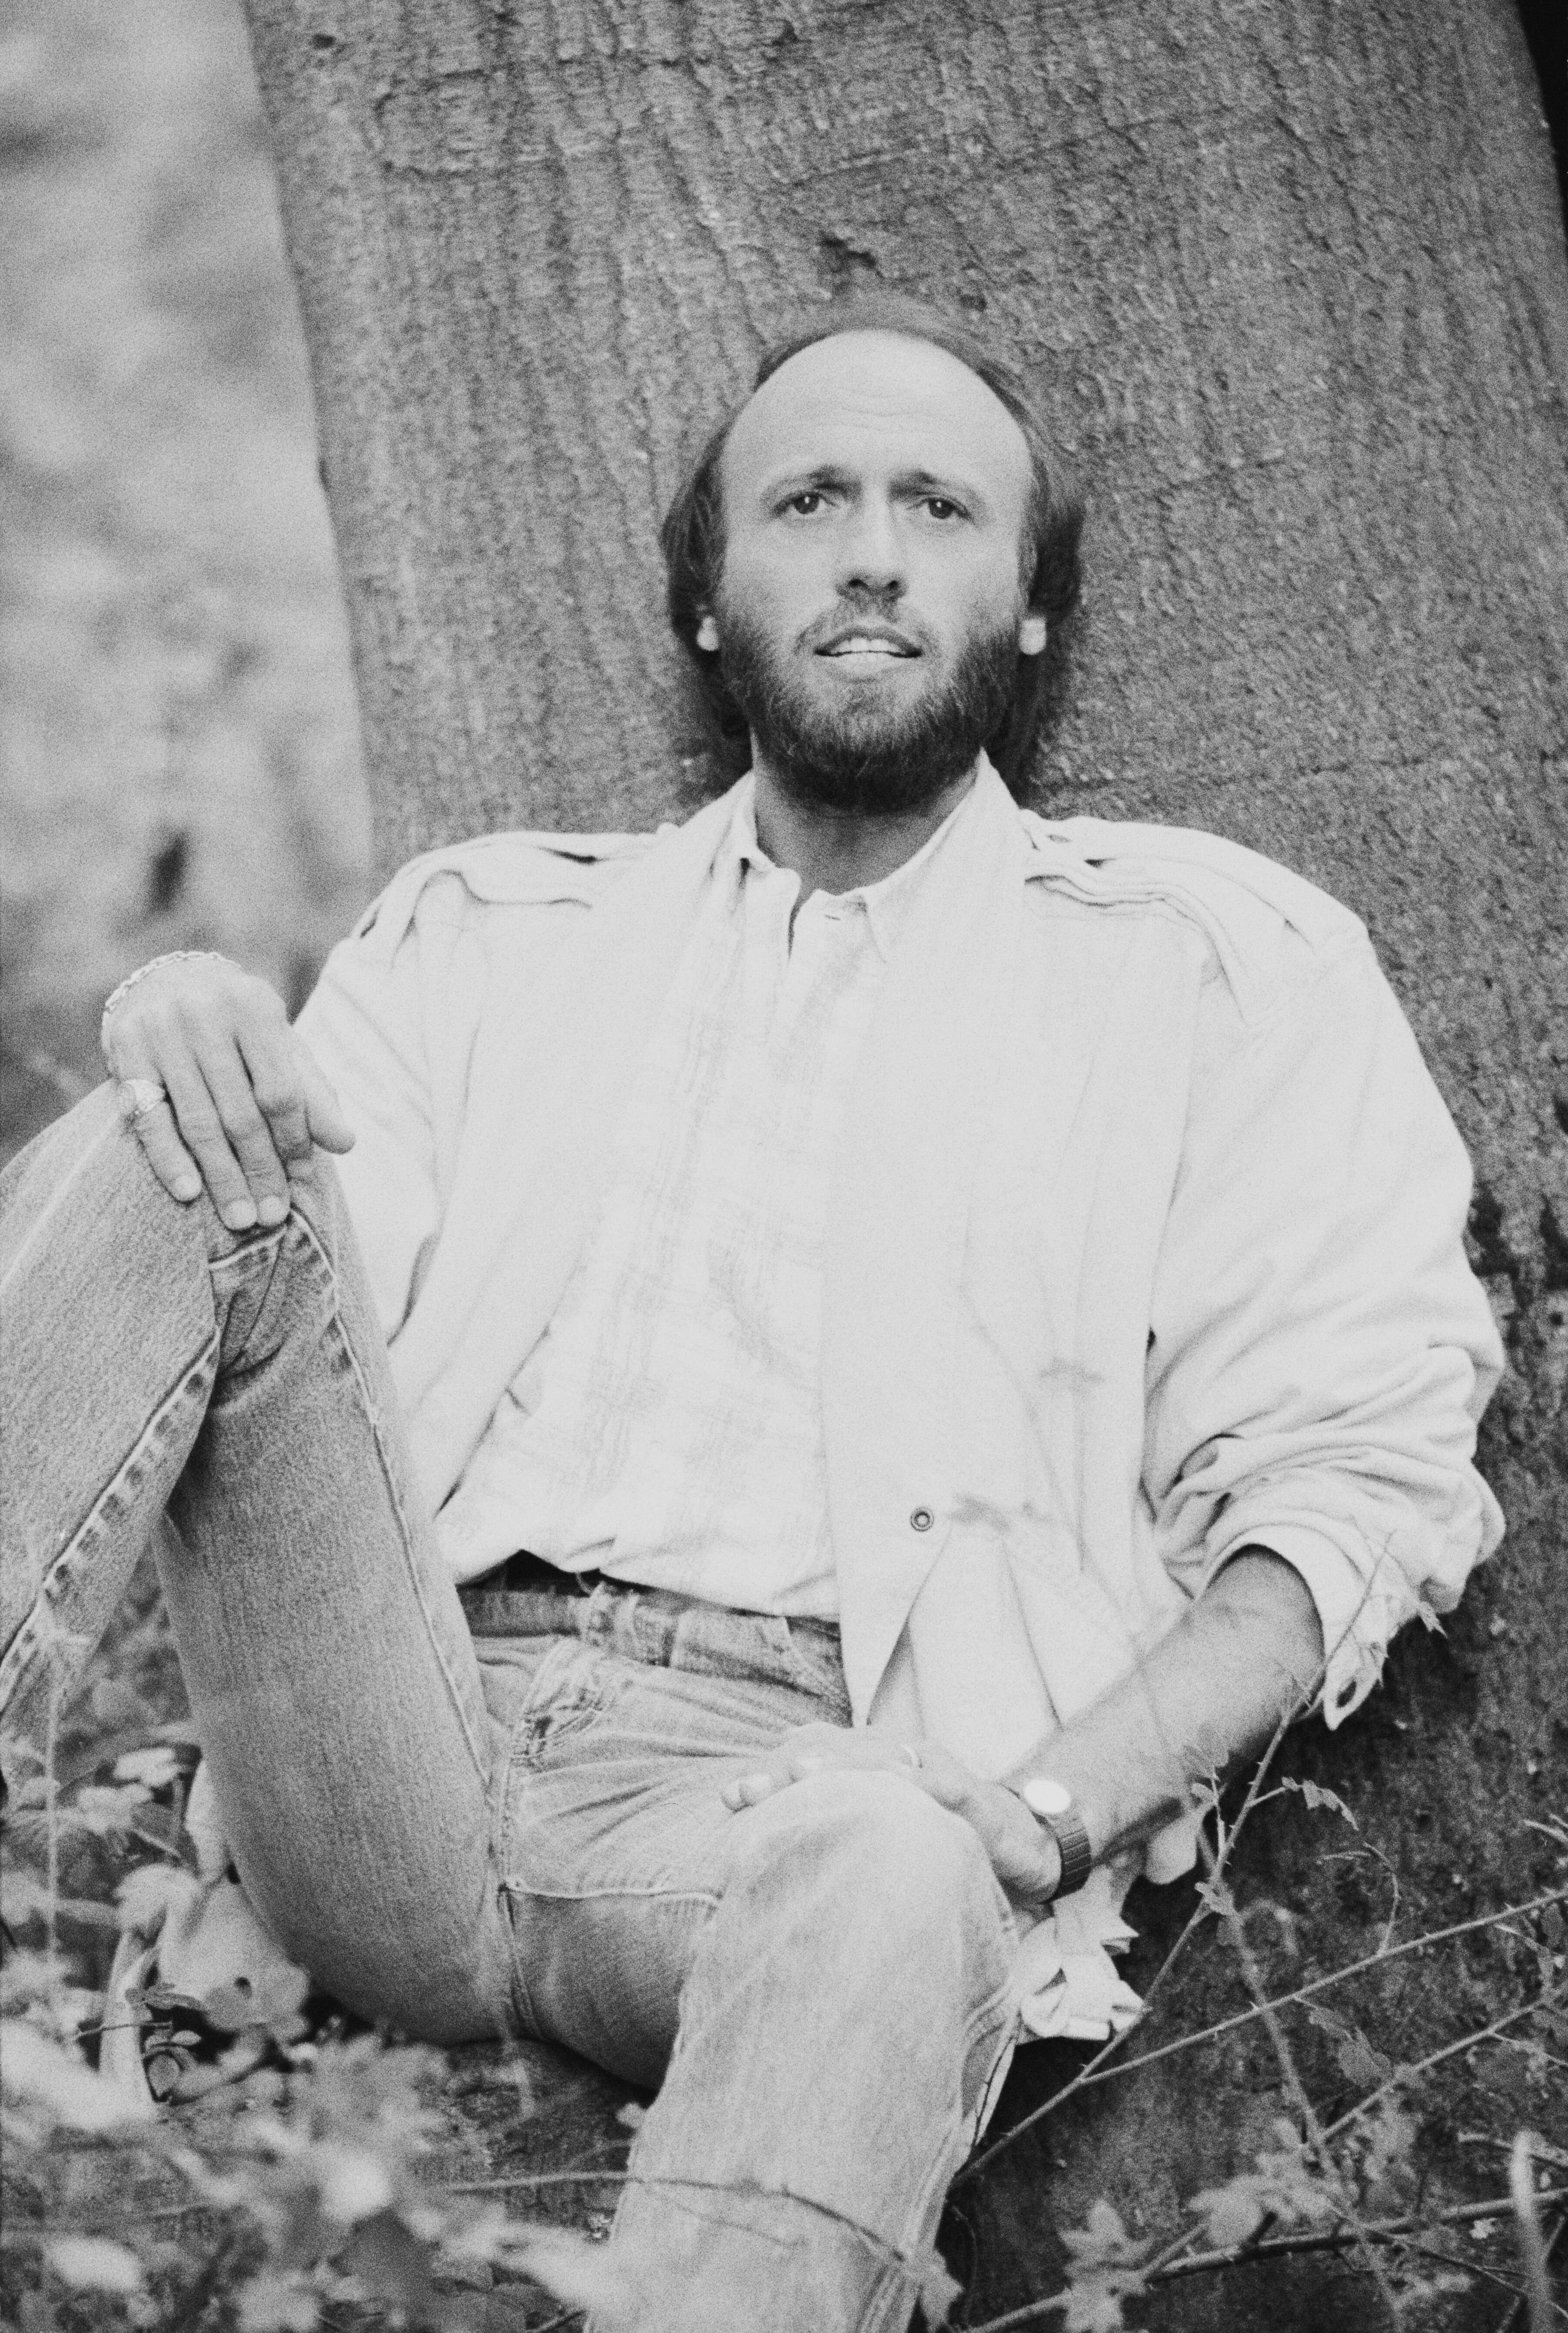 Maurice Gibb (1949 - 2003) von den Bee Gees, 1984. | Quelle: Getty Images